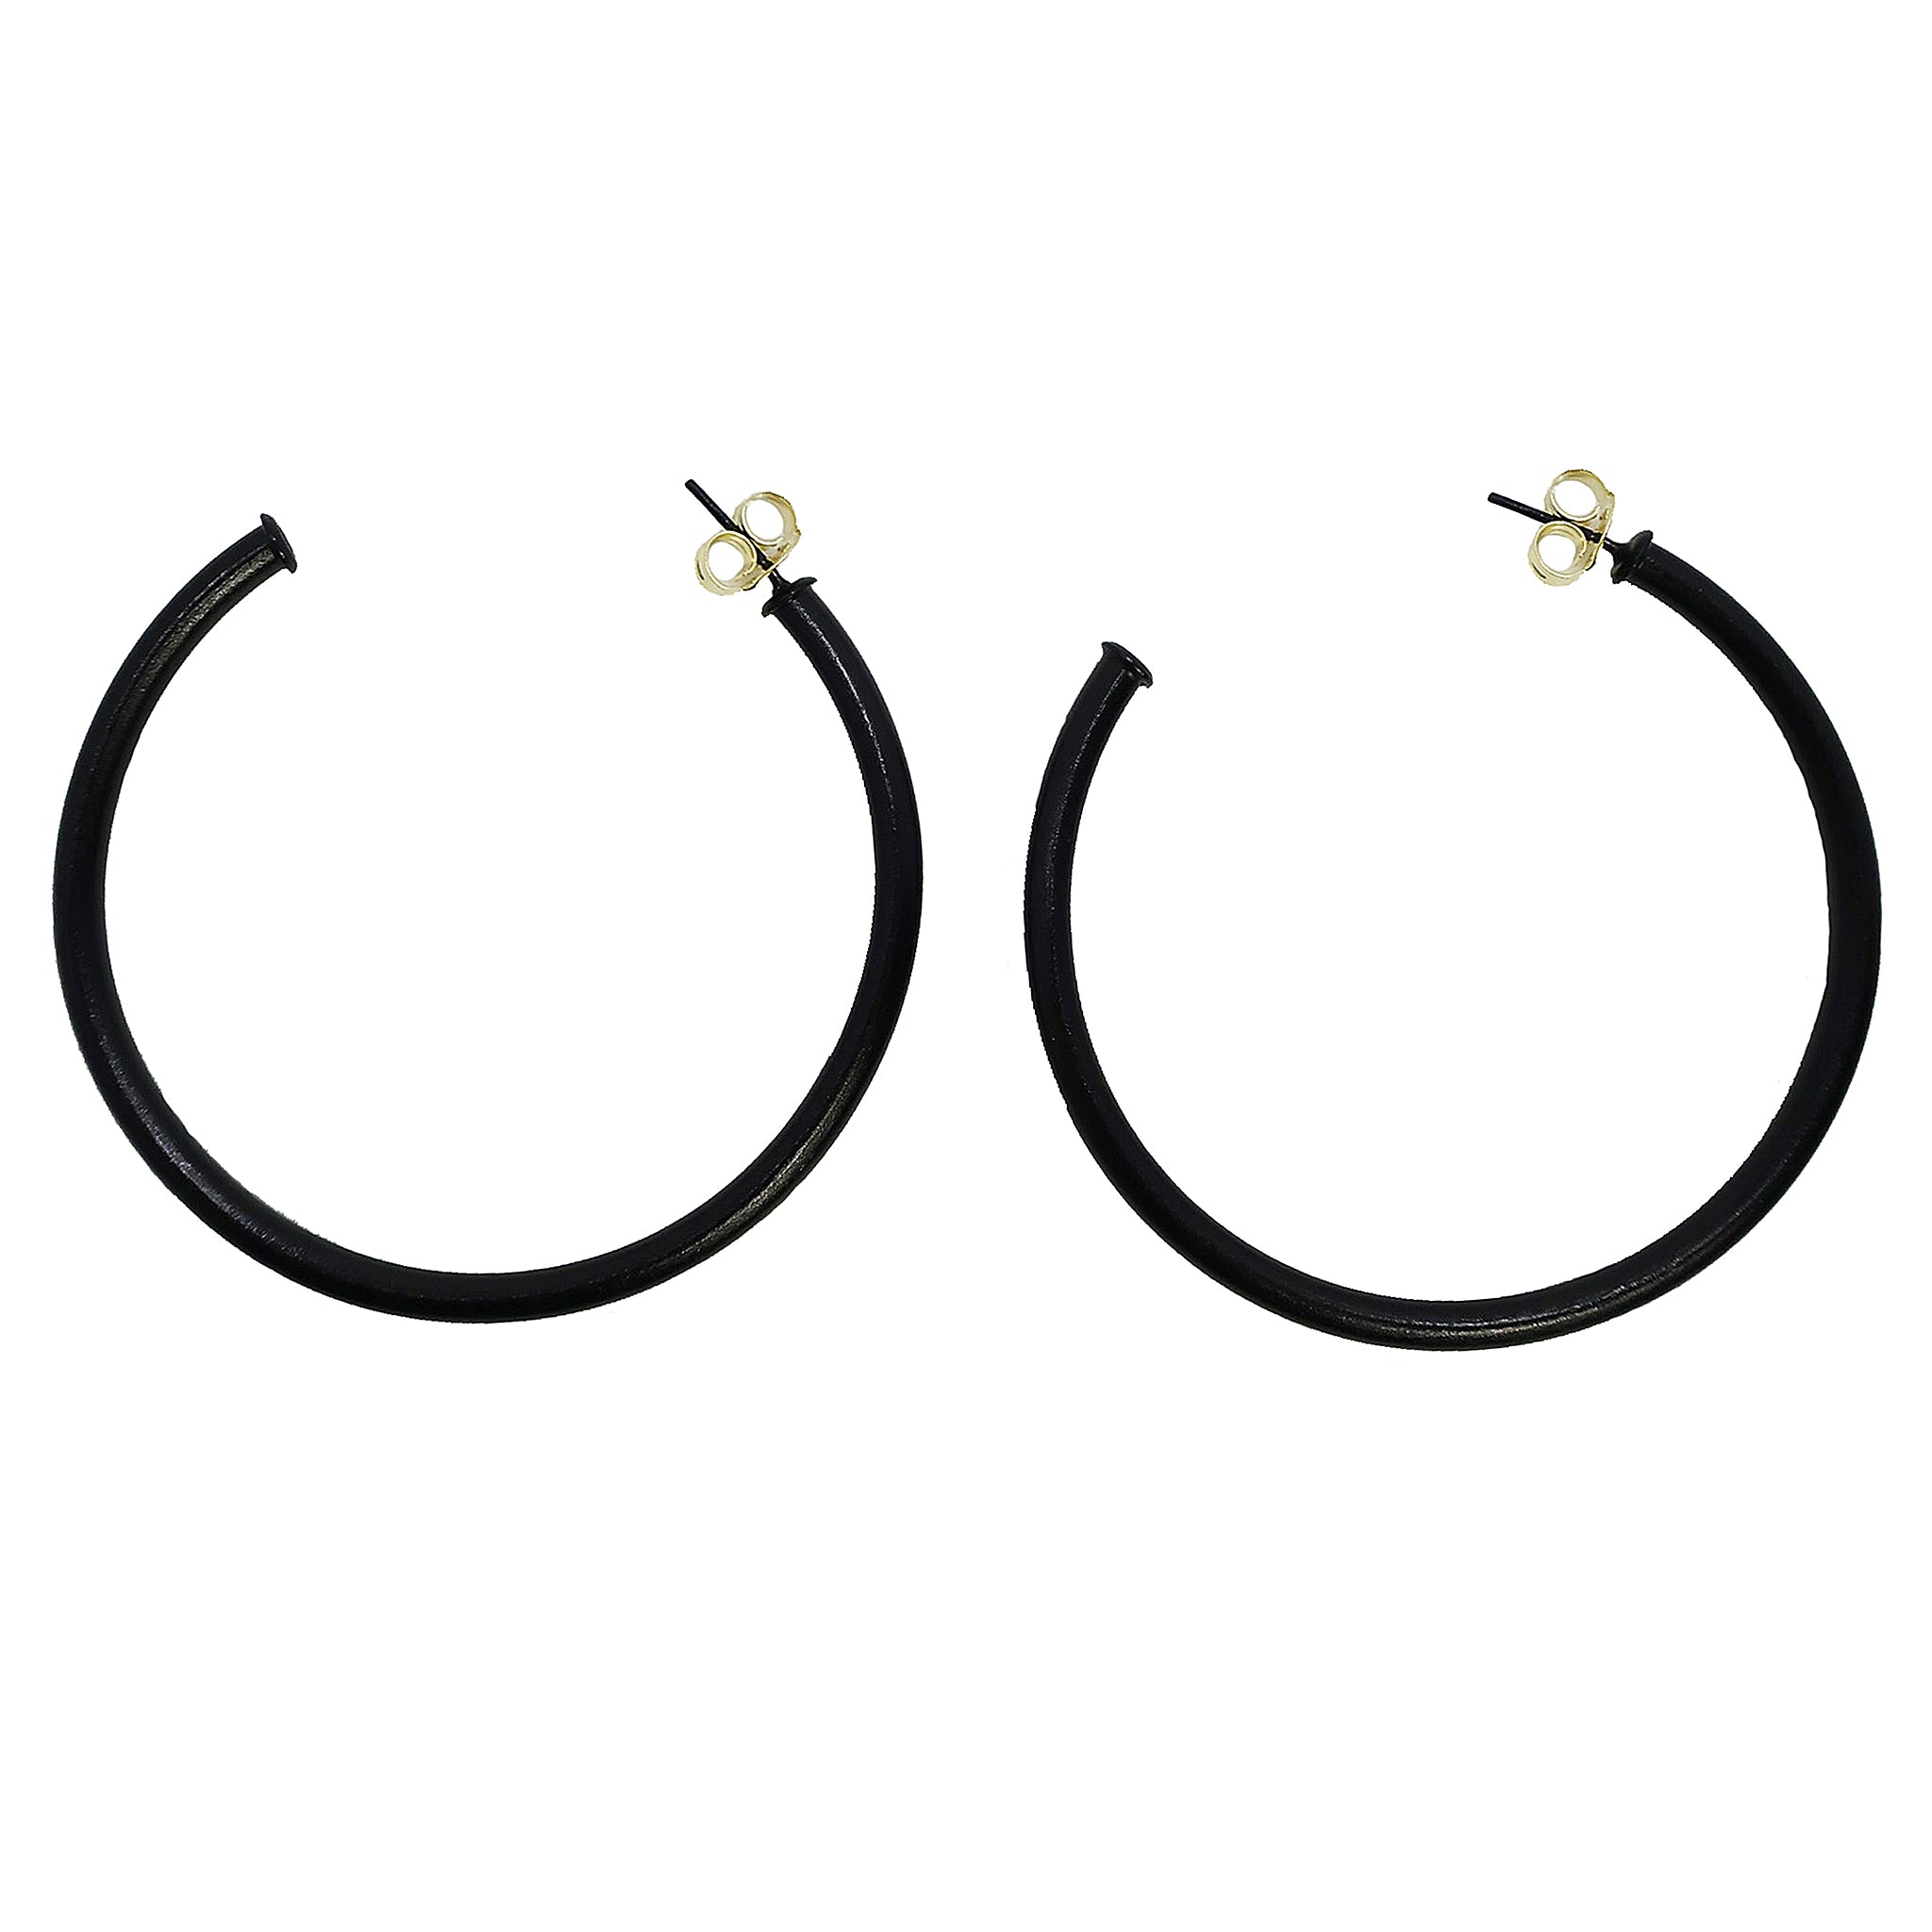 Sheila Fajl 2.5 Inch Everybody's Favorite Hoop Earrings in Painted Black